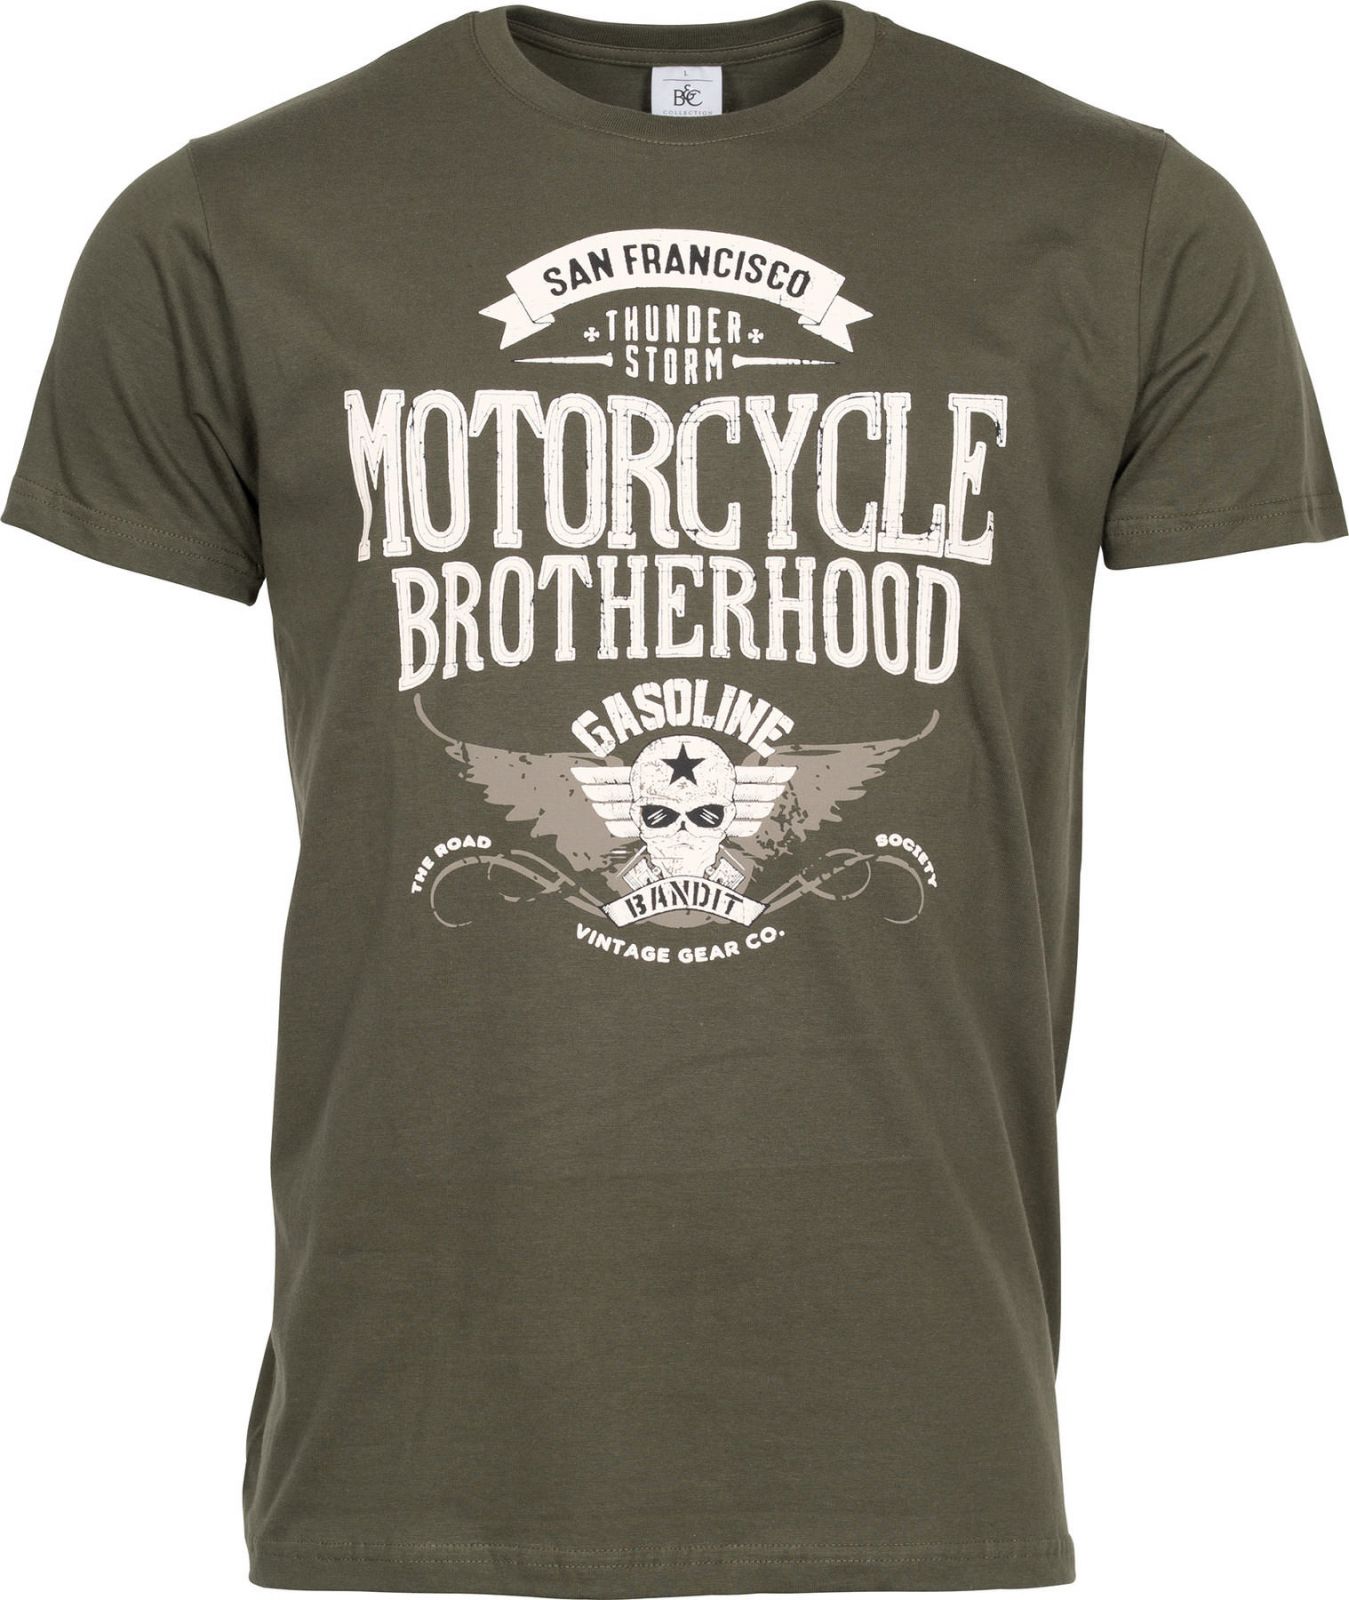 Pánské tričko Motorcycle Brotherhood - tmavo olivová Gasoline Bandit